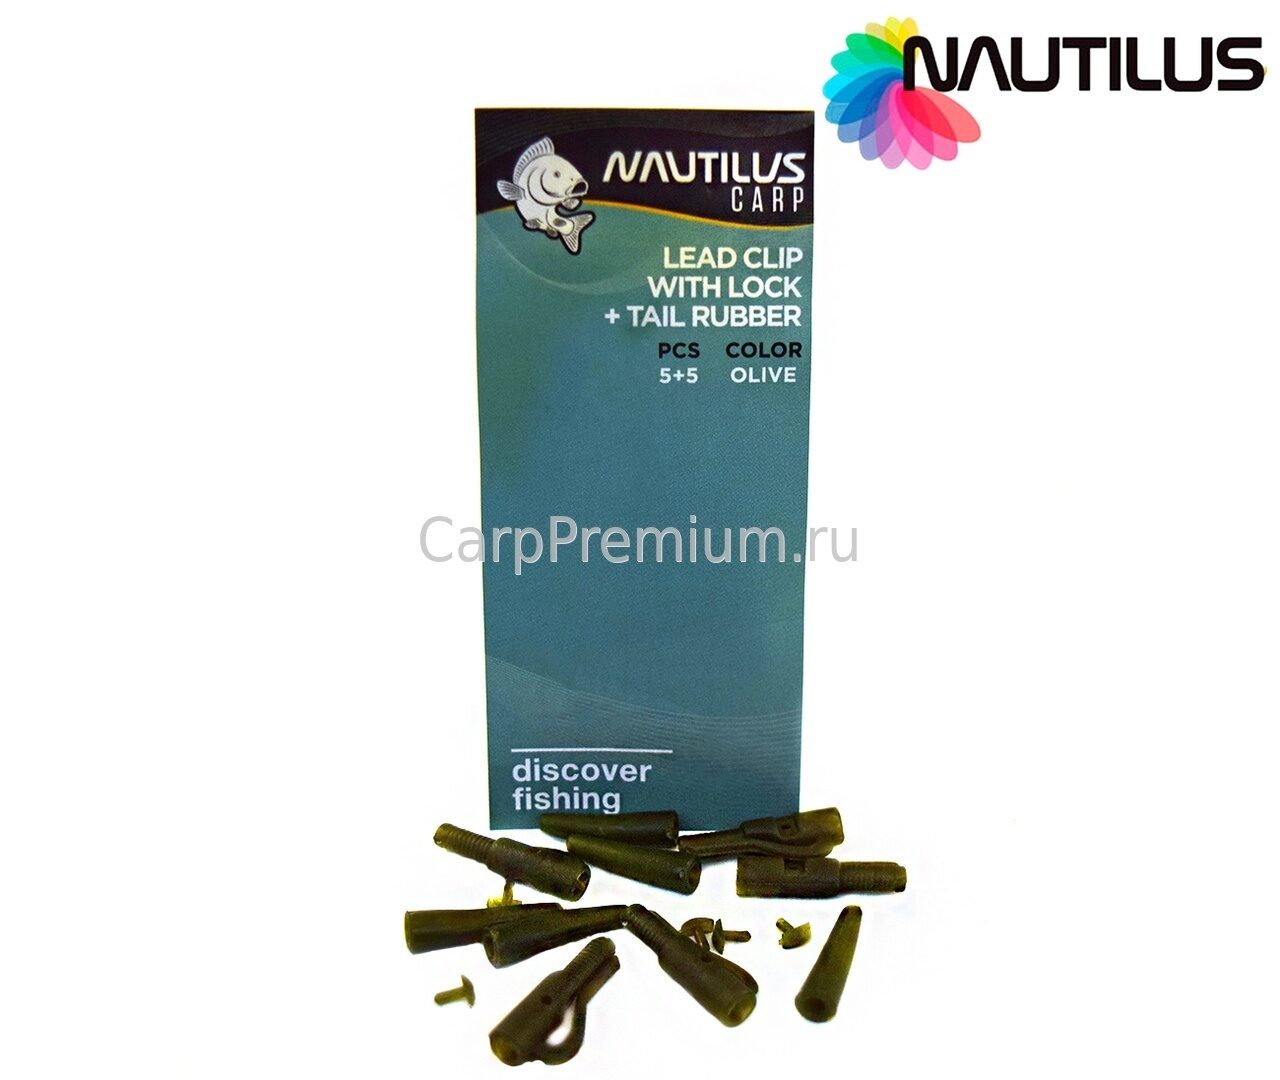 Карповые безопасные клипсы с фиксатором и конусом Зеленые Nautilus (Наутилус) - Lead Clip With Lock-Tail Rubber Olive, 5+5 шт